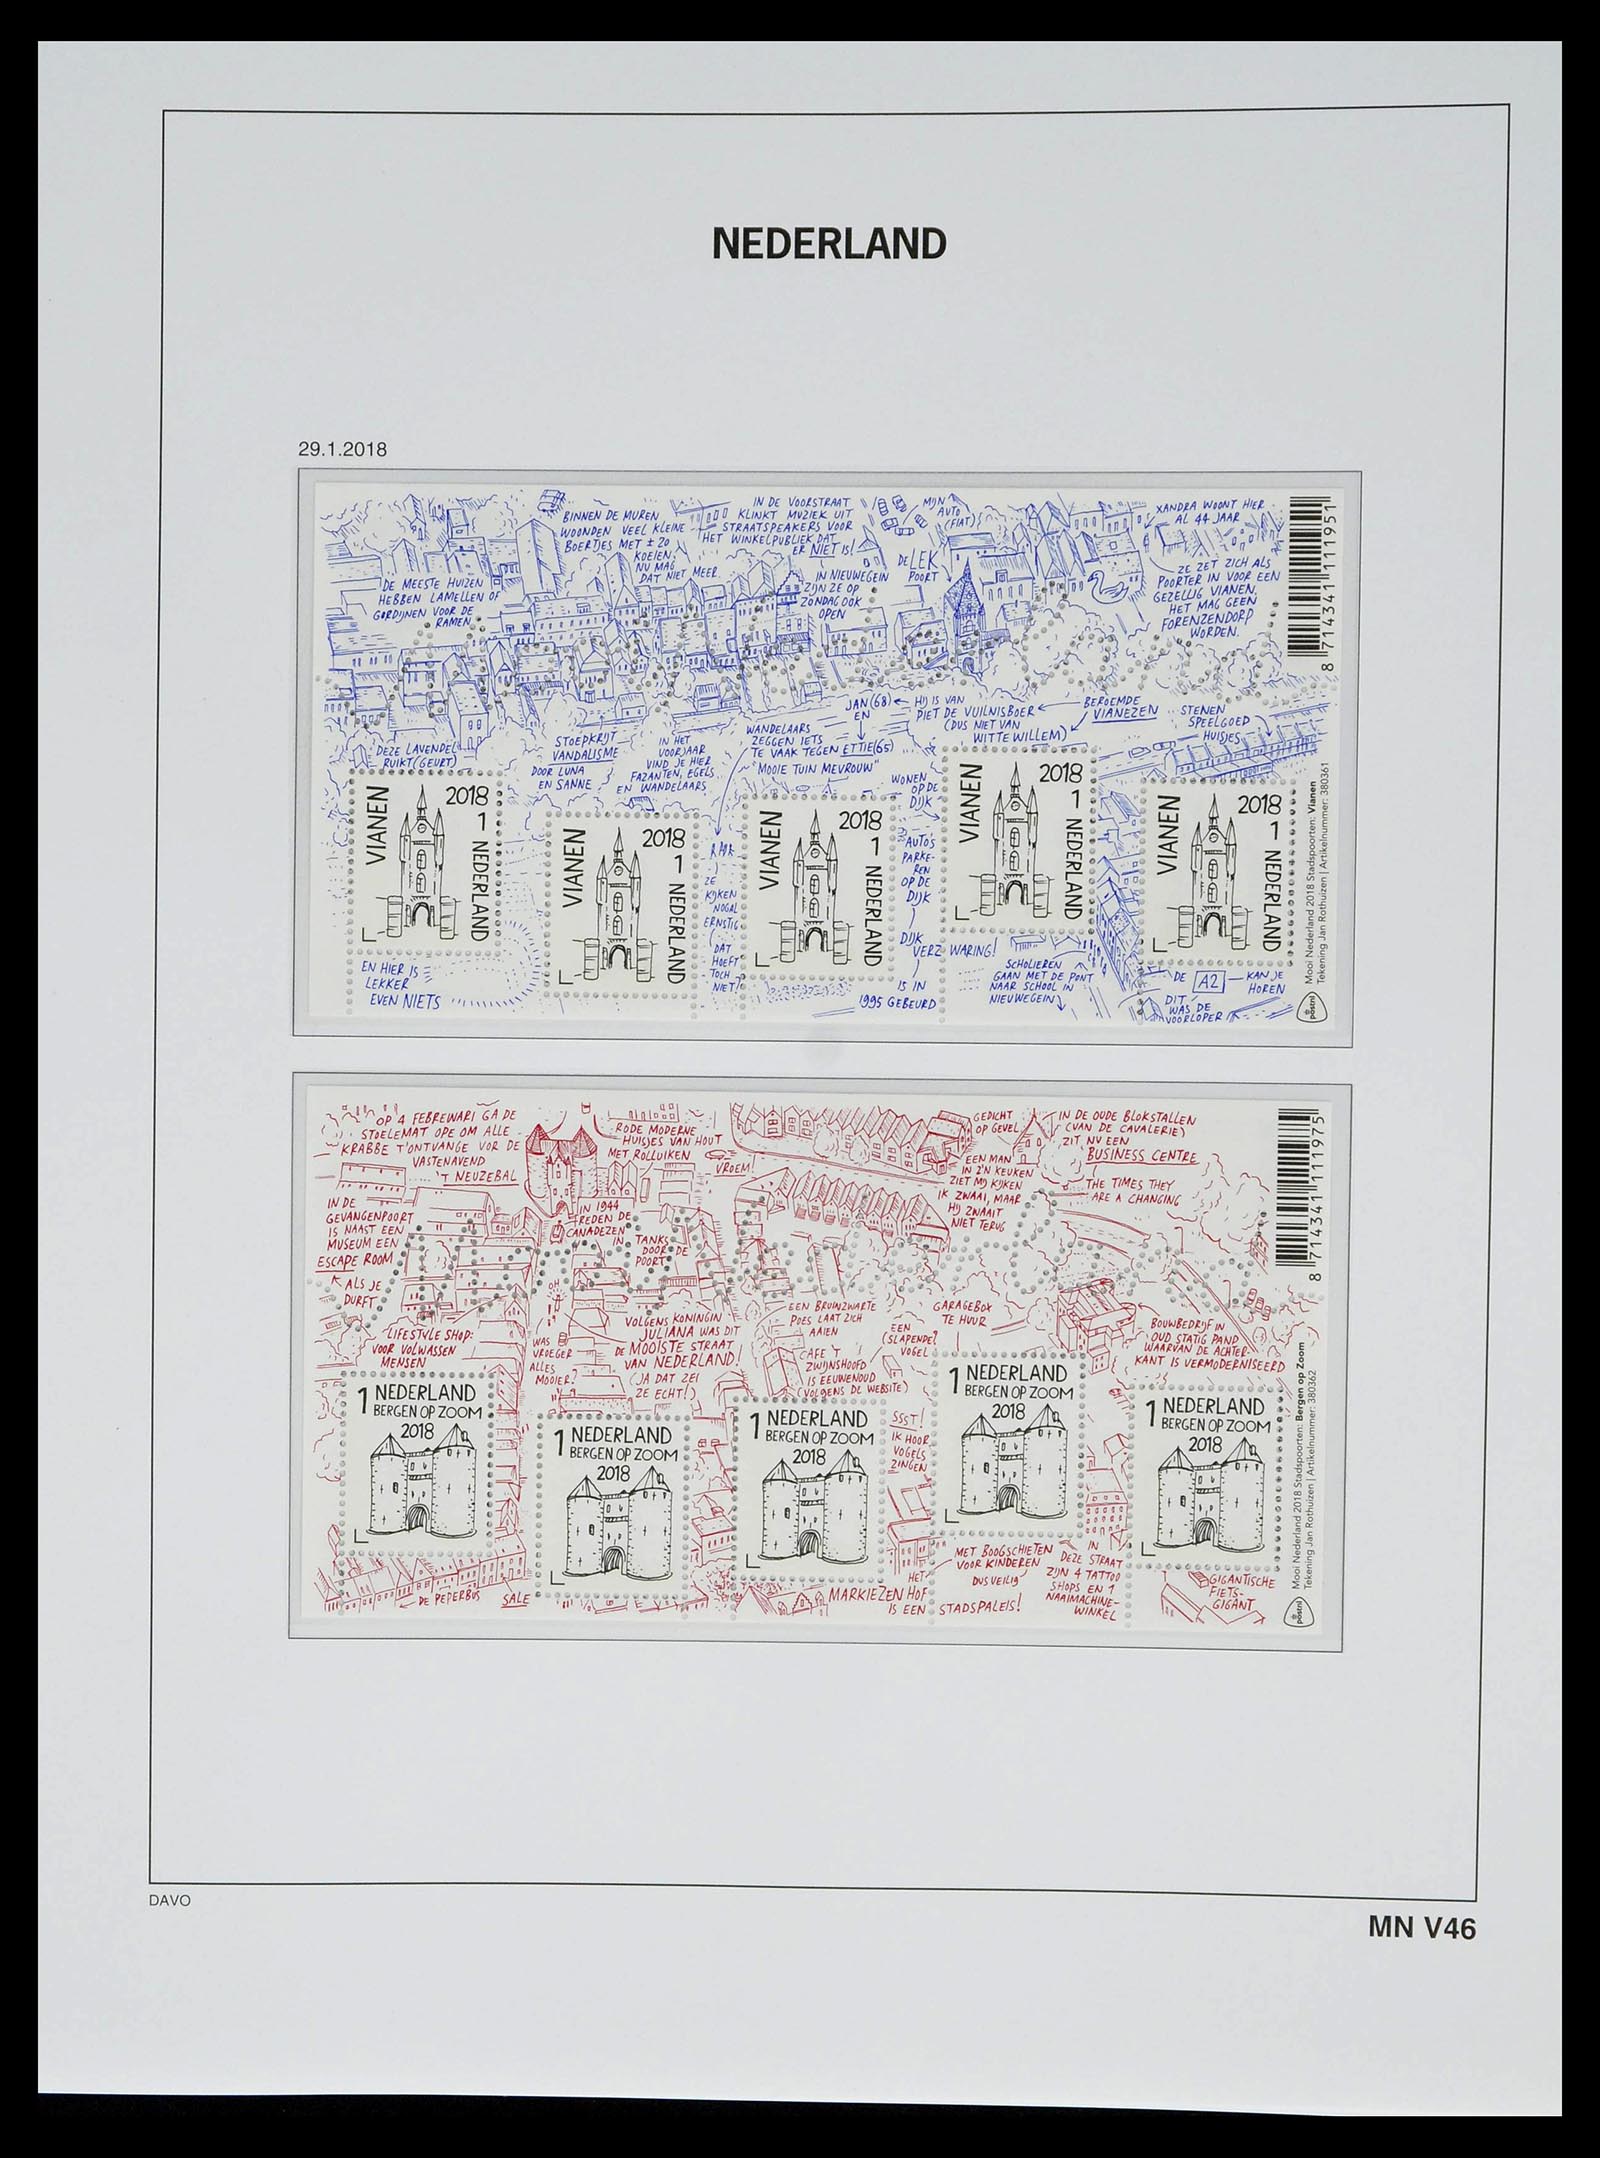 39134 0265 - Stamp collection 39134 Netherlands sheetlets 1992-2019!